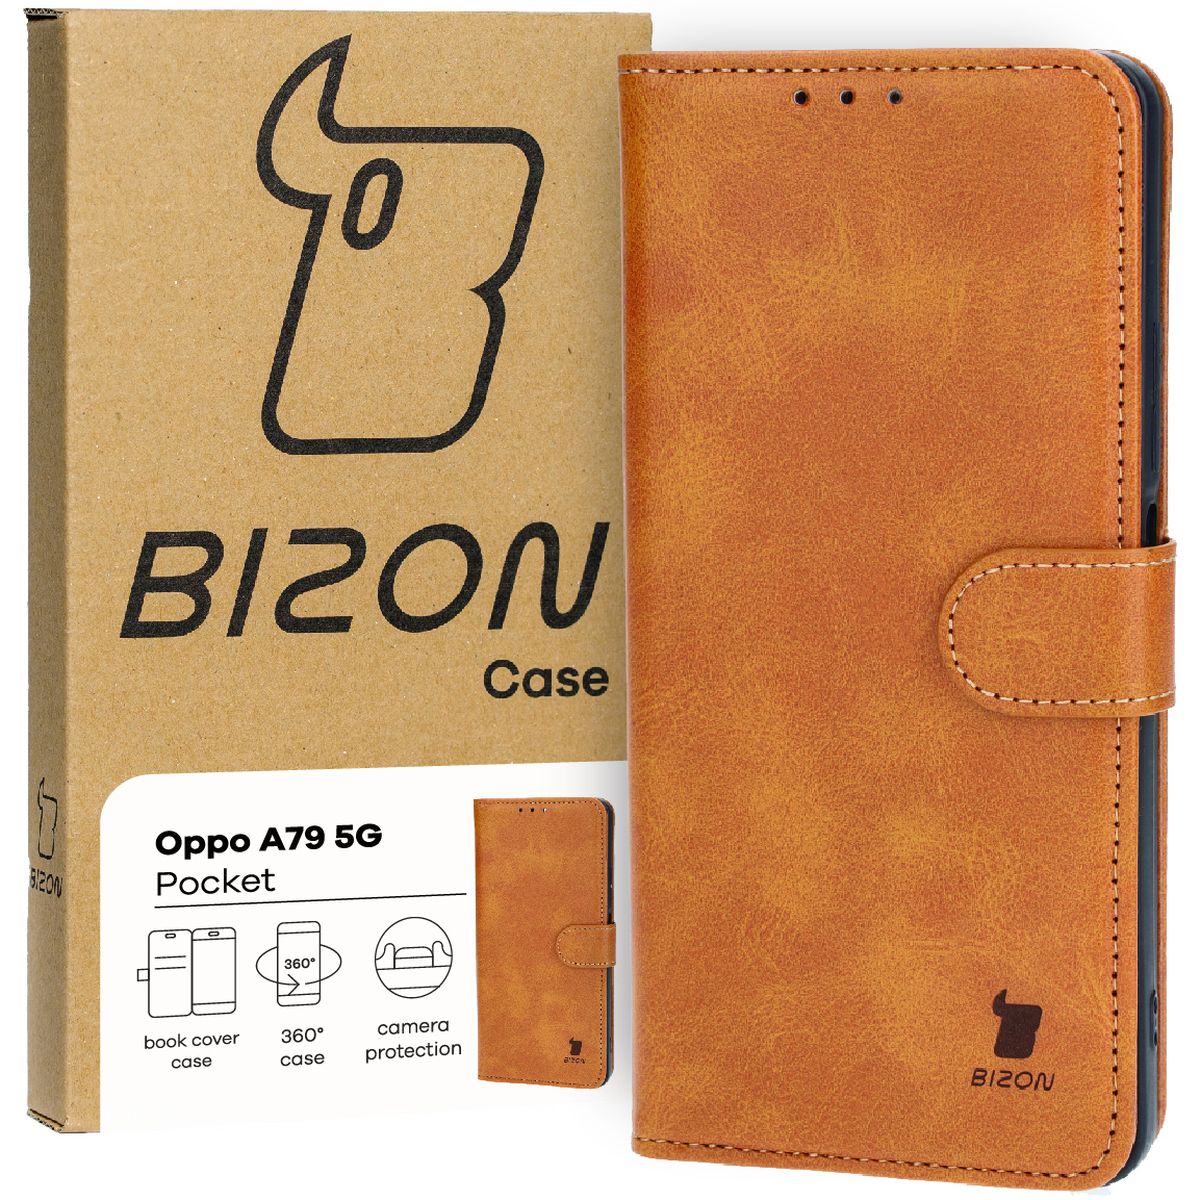 Schutzhülle für Oppo A79 5G, Bizon Case Pocket, Braun